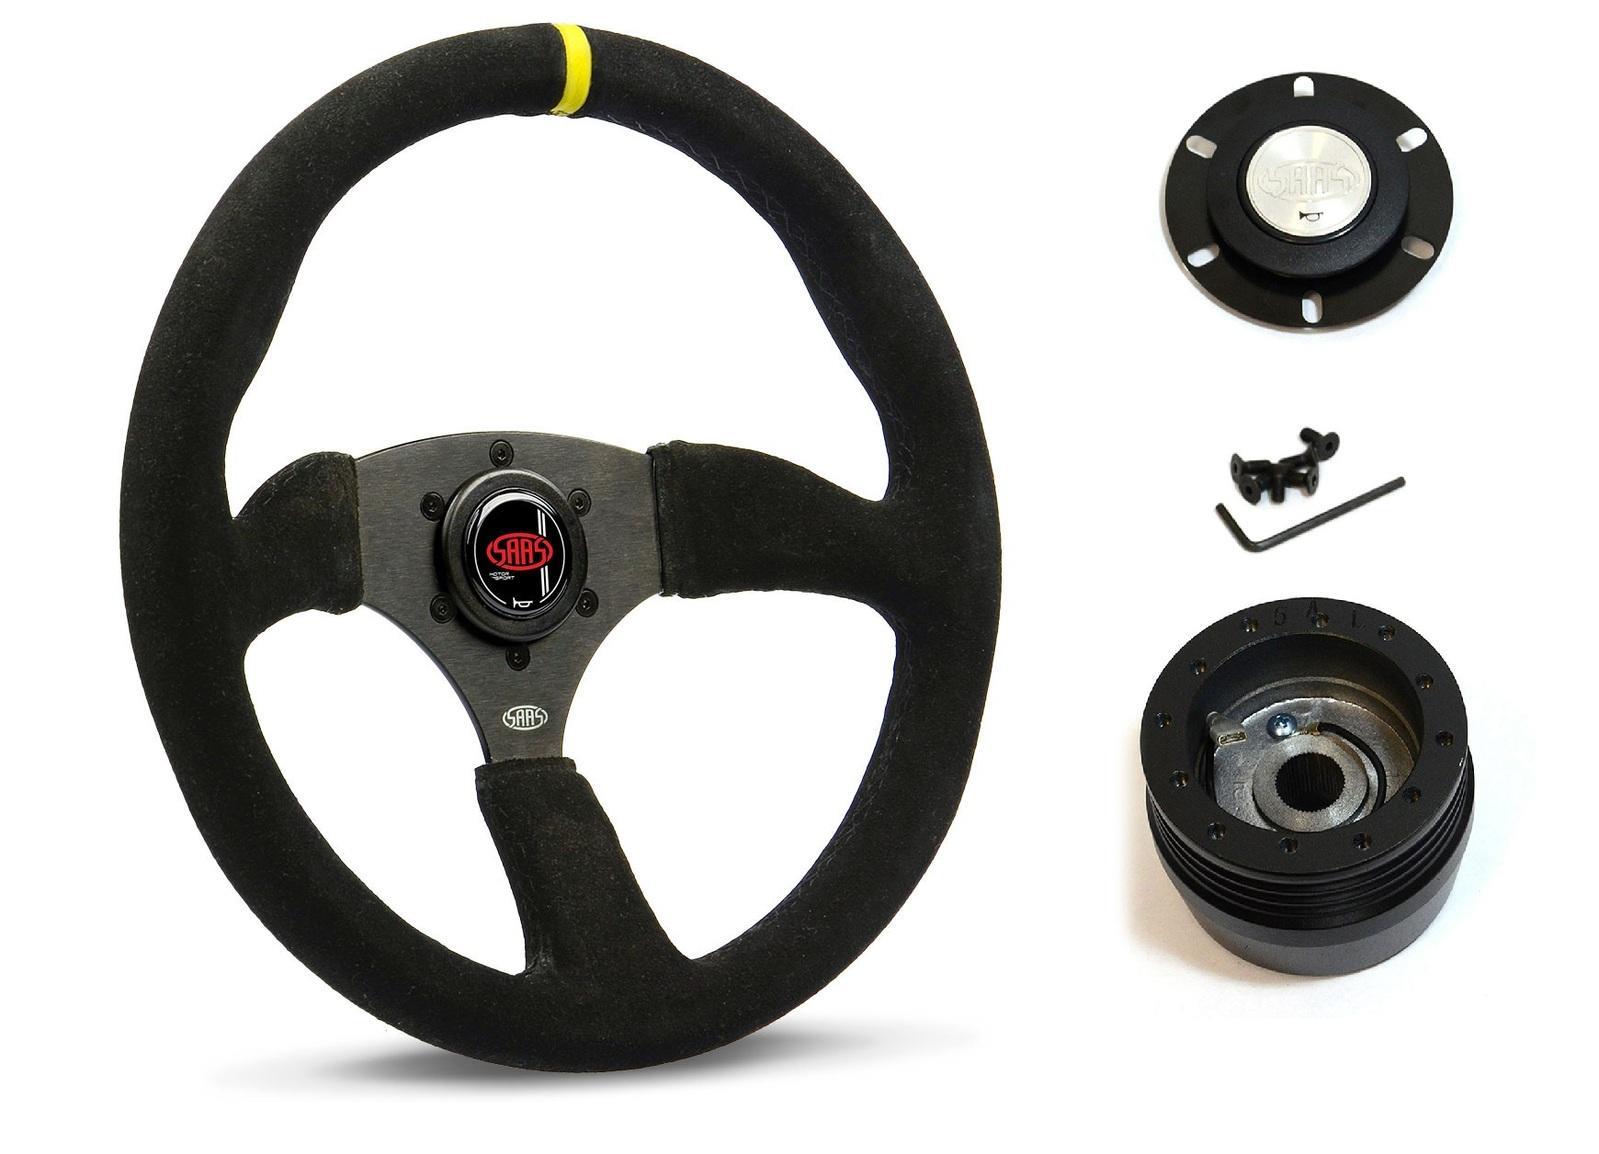 SAAS Steering Wheel Suede 14" ADR Tokyo Motorsport Black Spoke + Indicator SWMS2 and SAAS boss kit for Ford Corsair All Models 1988-1996